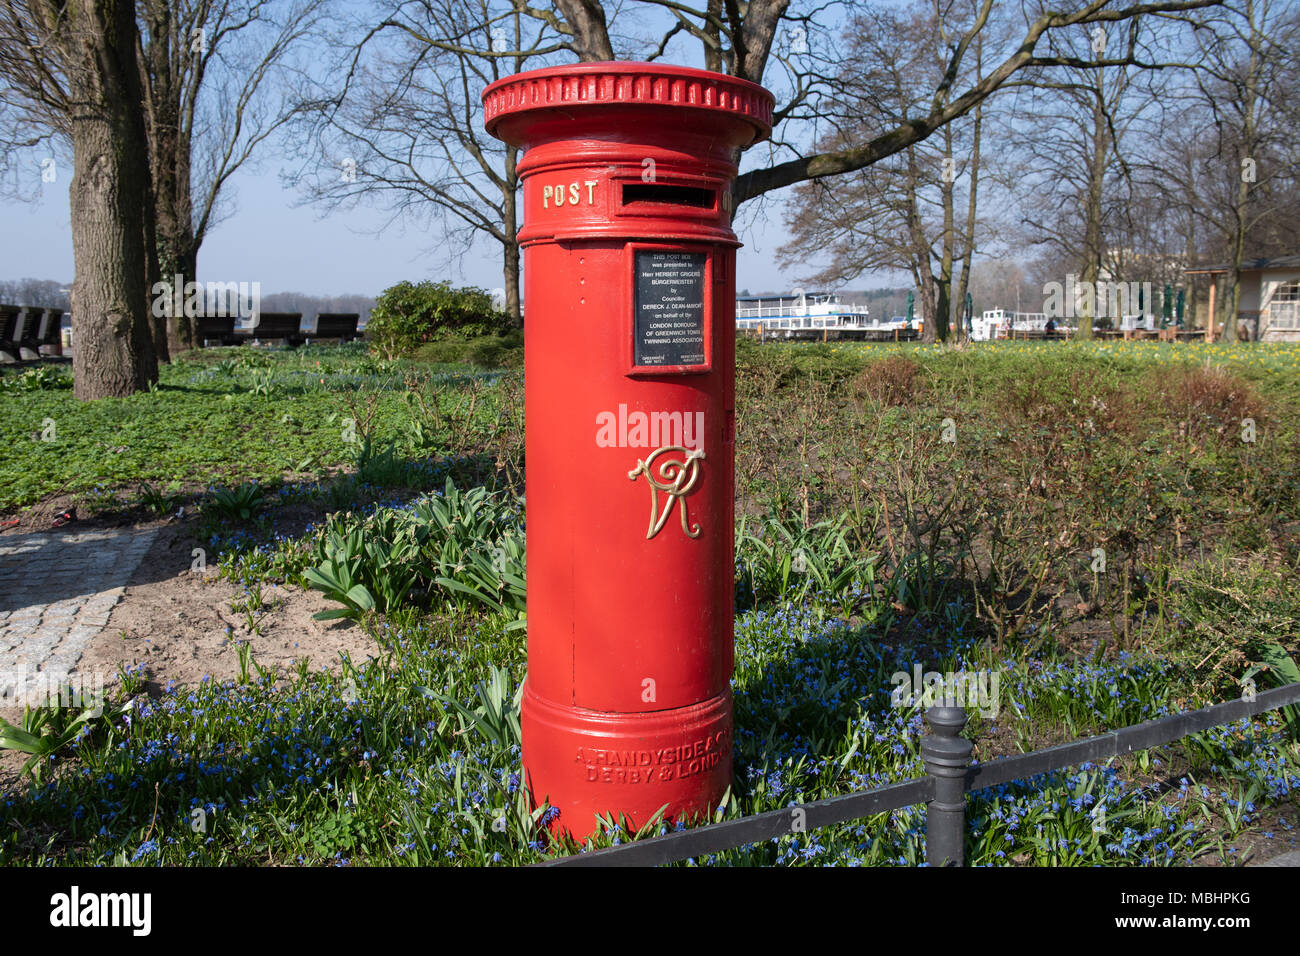 11 aprile 2018, Berlin, Germania: una cassetta postale in inglese su un  area verde dal lago Tegeler. Lo storico inglese Mailbox dell'isola,  originato 1973 da Greenwich. L'inglese cabina telefonica può anche essere